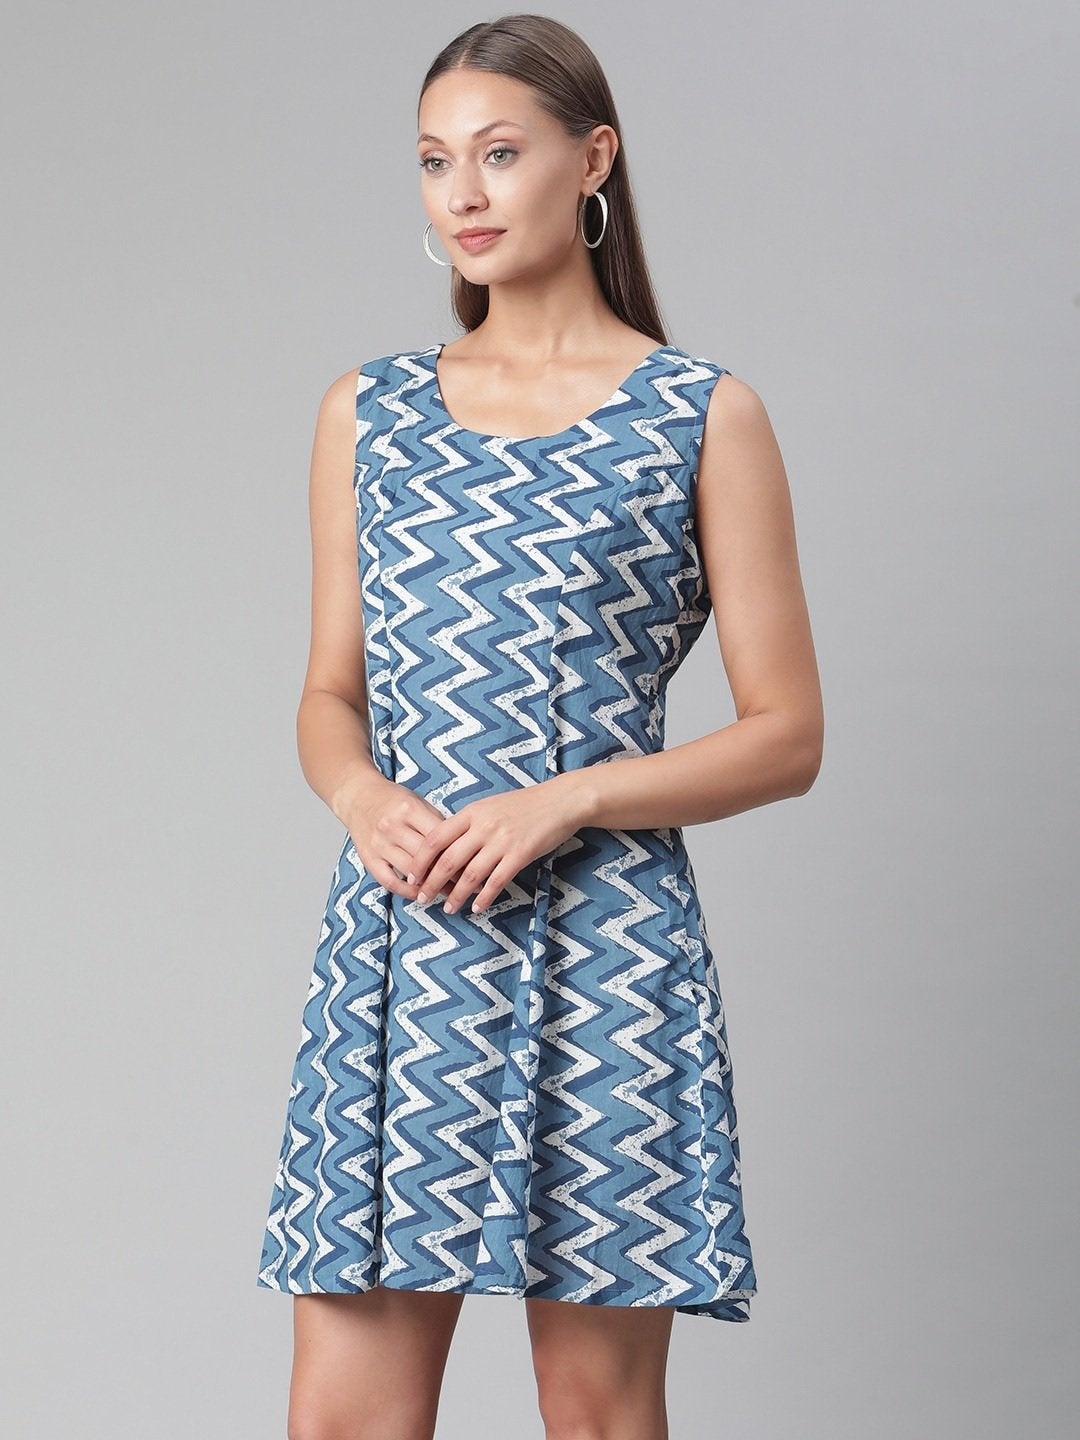 Women's Blue Knee Length Cotton Dress - Divena